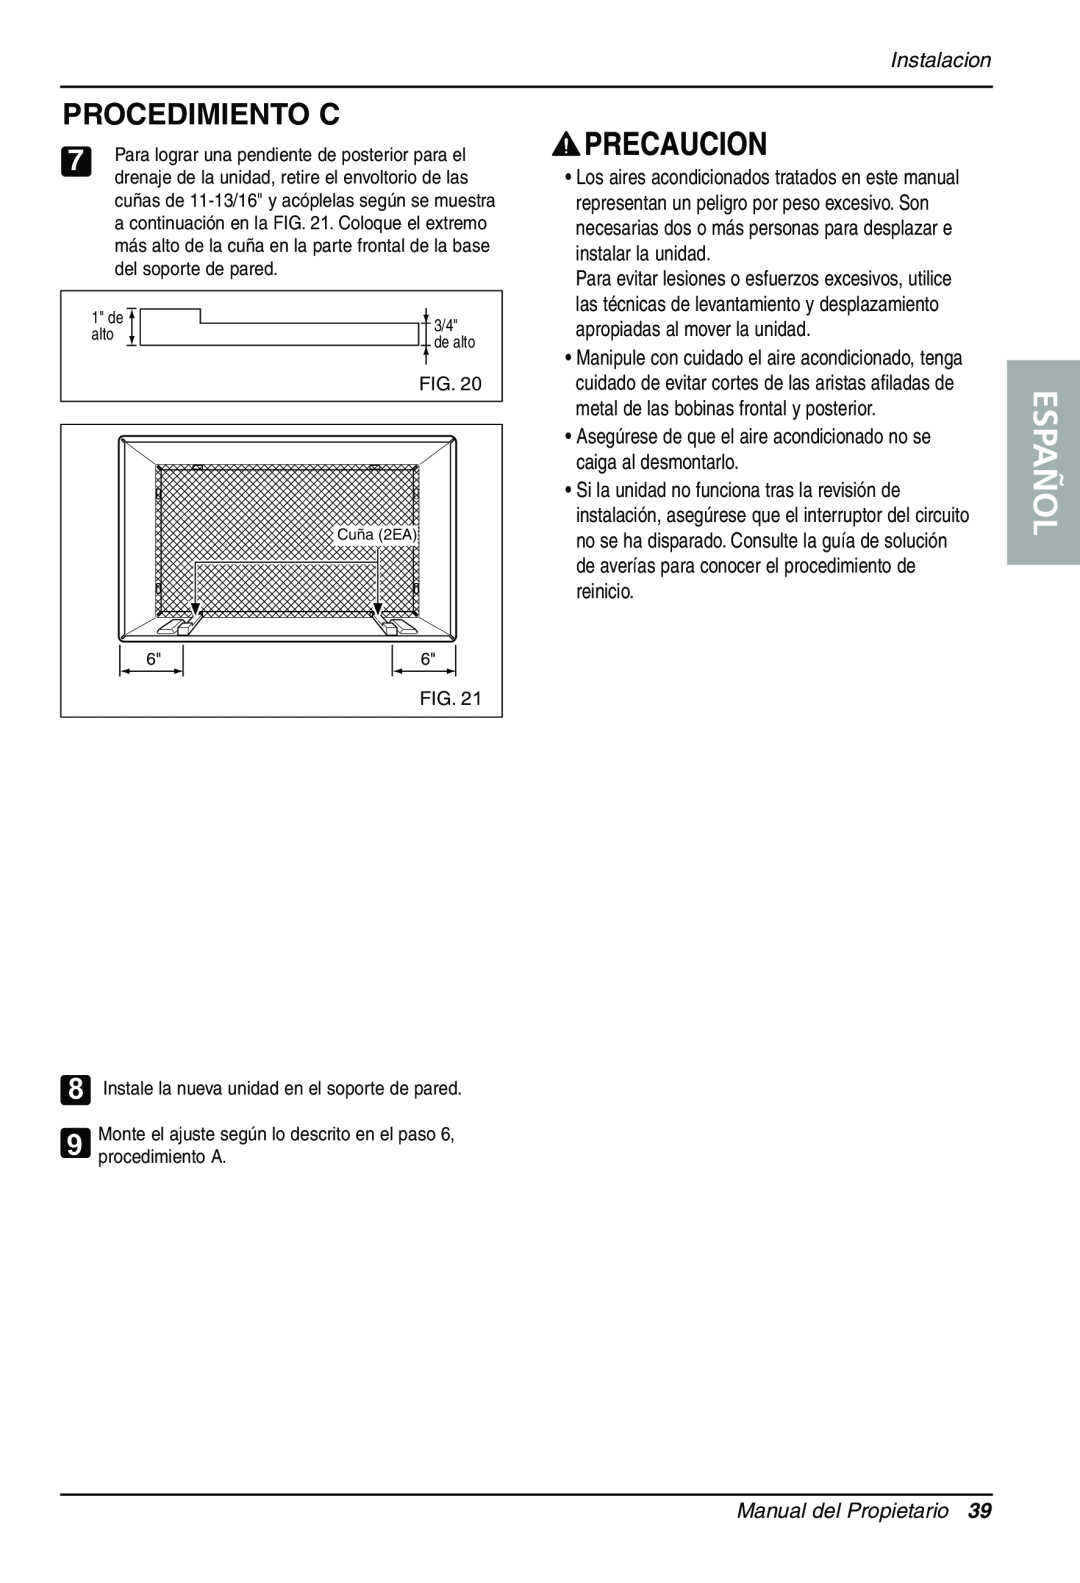 Sears LT123CNR, LT103CNR, LT143CNR manual Español, Procedimiento C, Instalacion, Manual del Propietario 